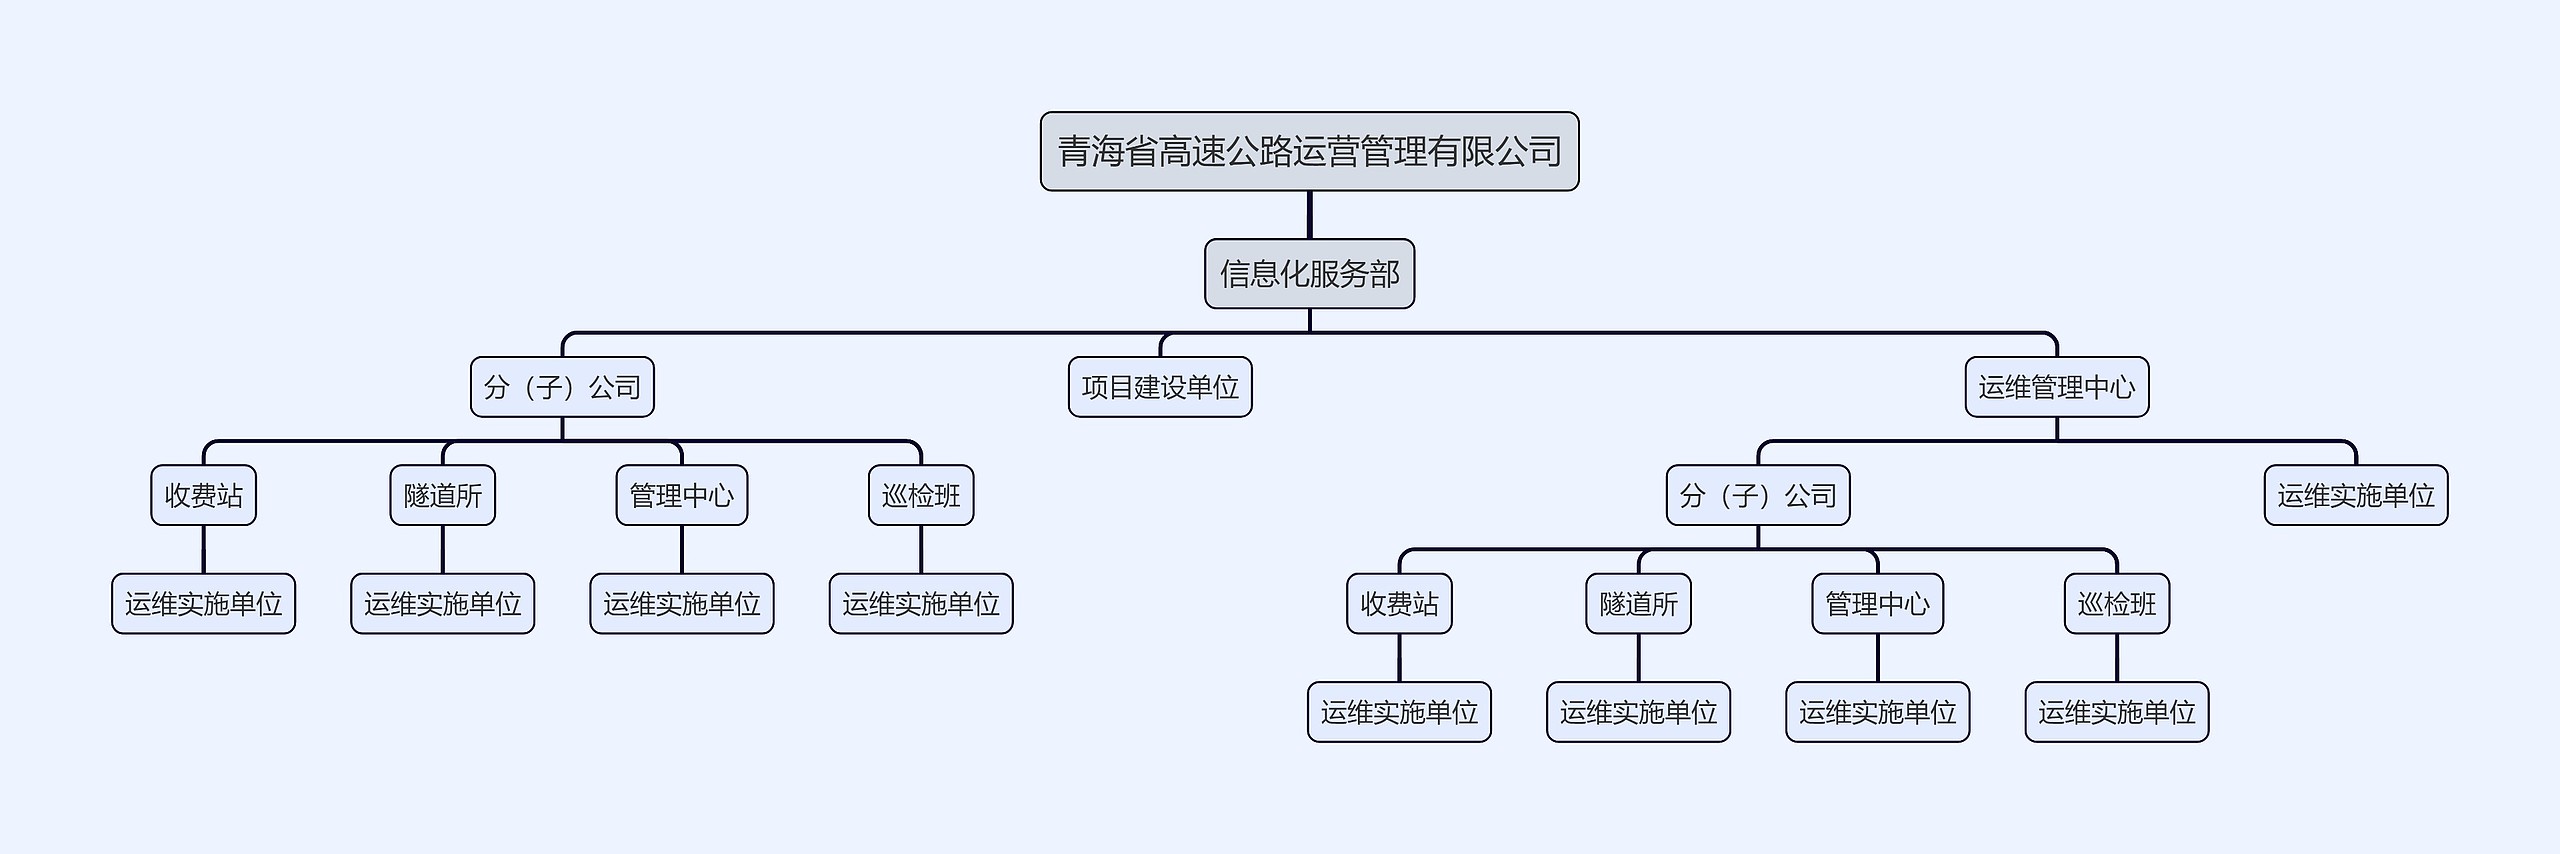 青海省高速公路运营管理有限公司思维导图